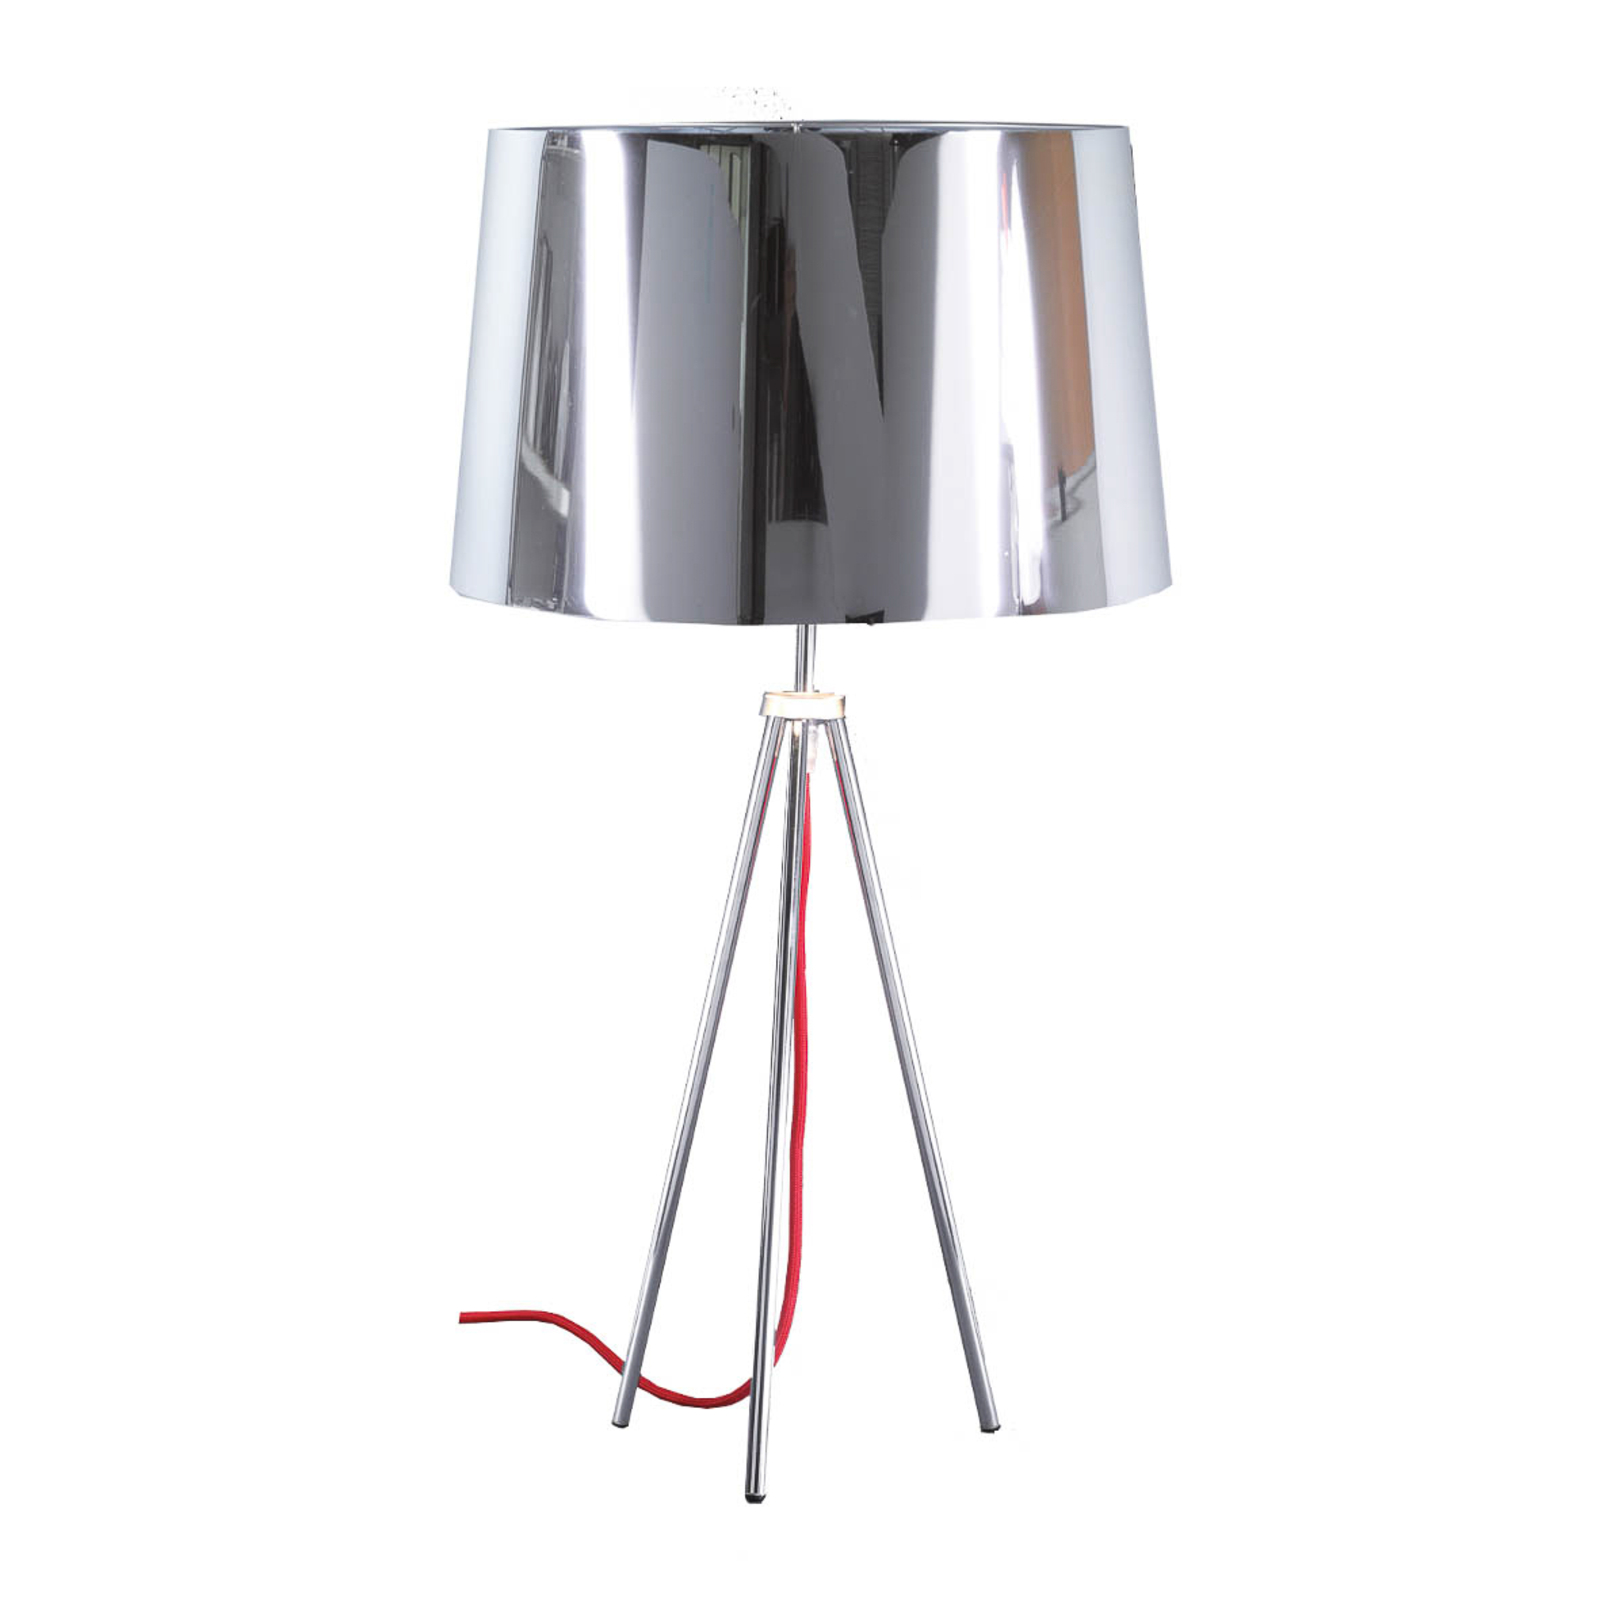 Aluminor Tropic bordslampa krom, röd kabel